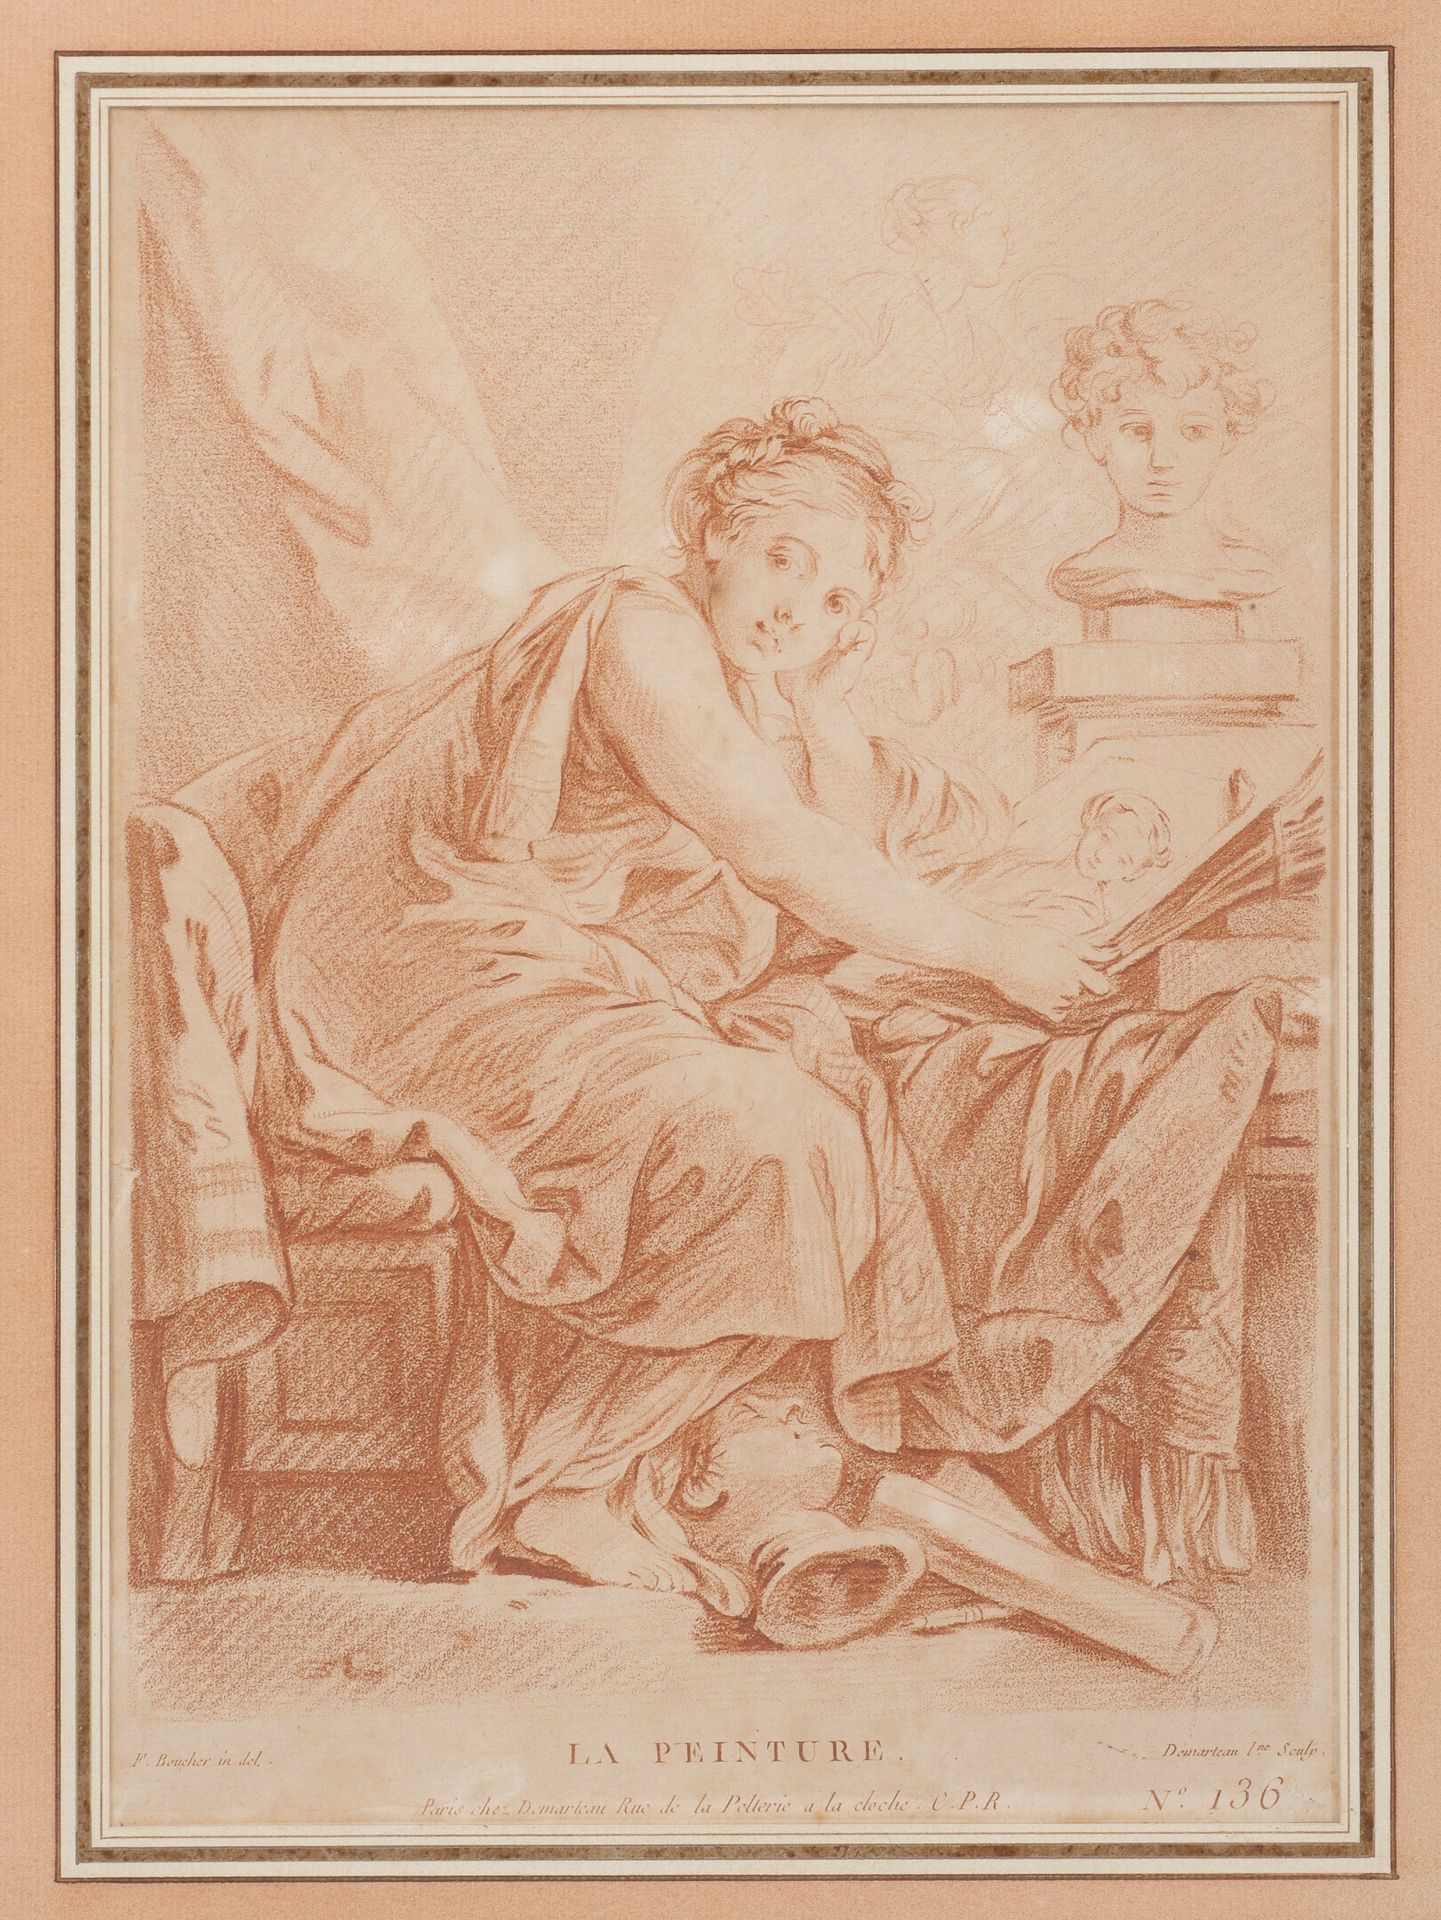 D'après François BOUCHER (1703-1770) Malen.

Gravur in sanguinischer Manier.

Pa&hellip;